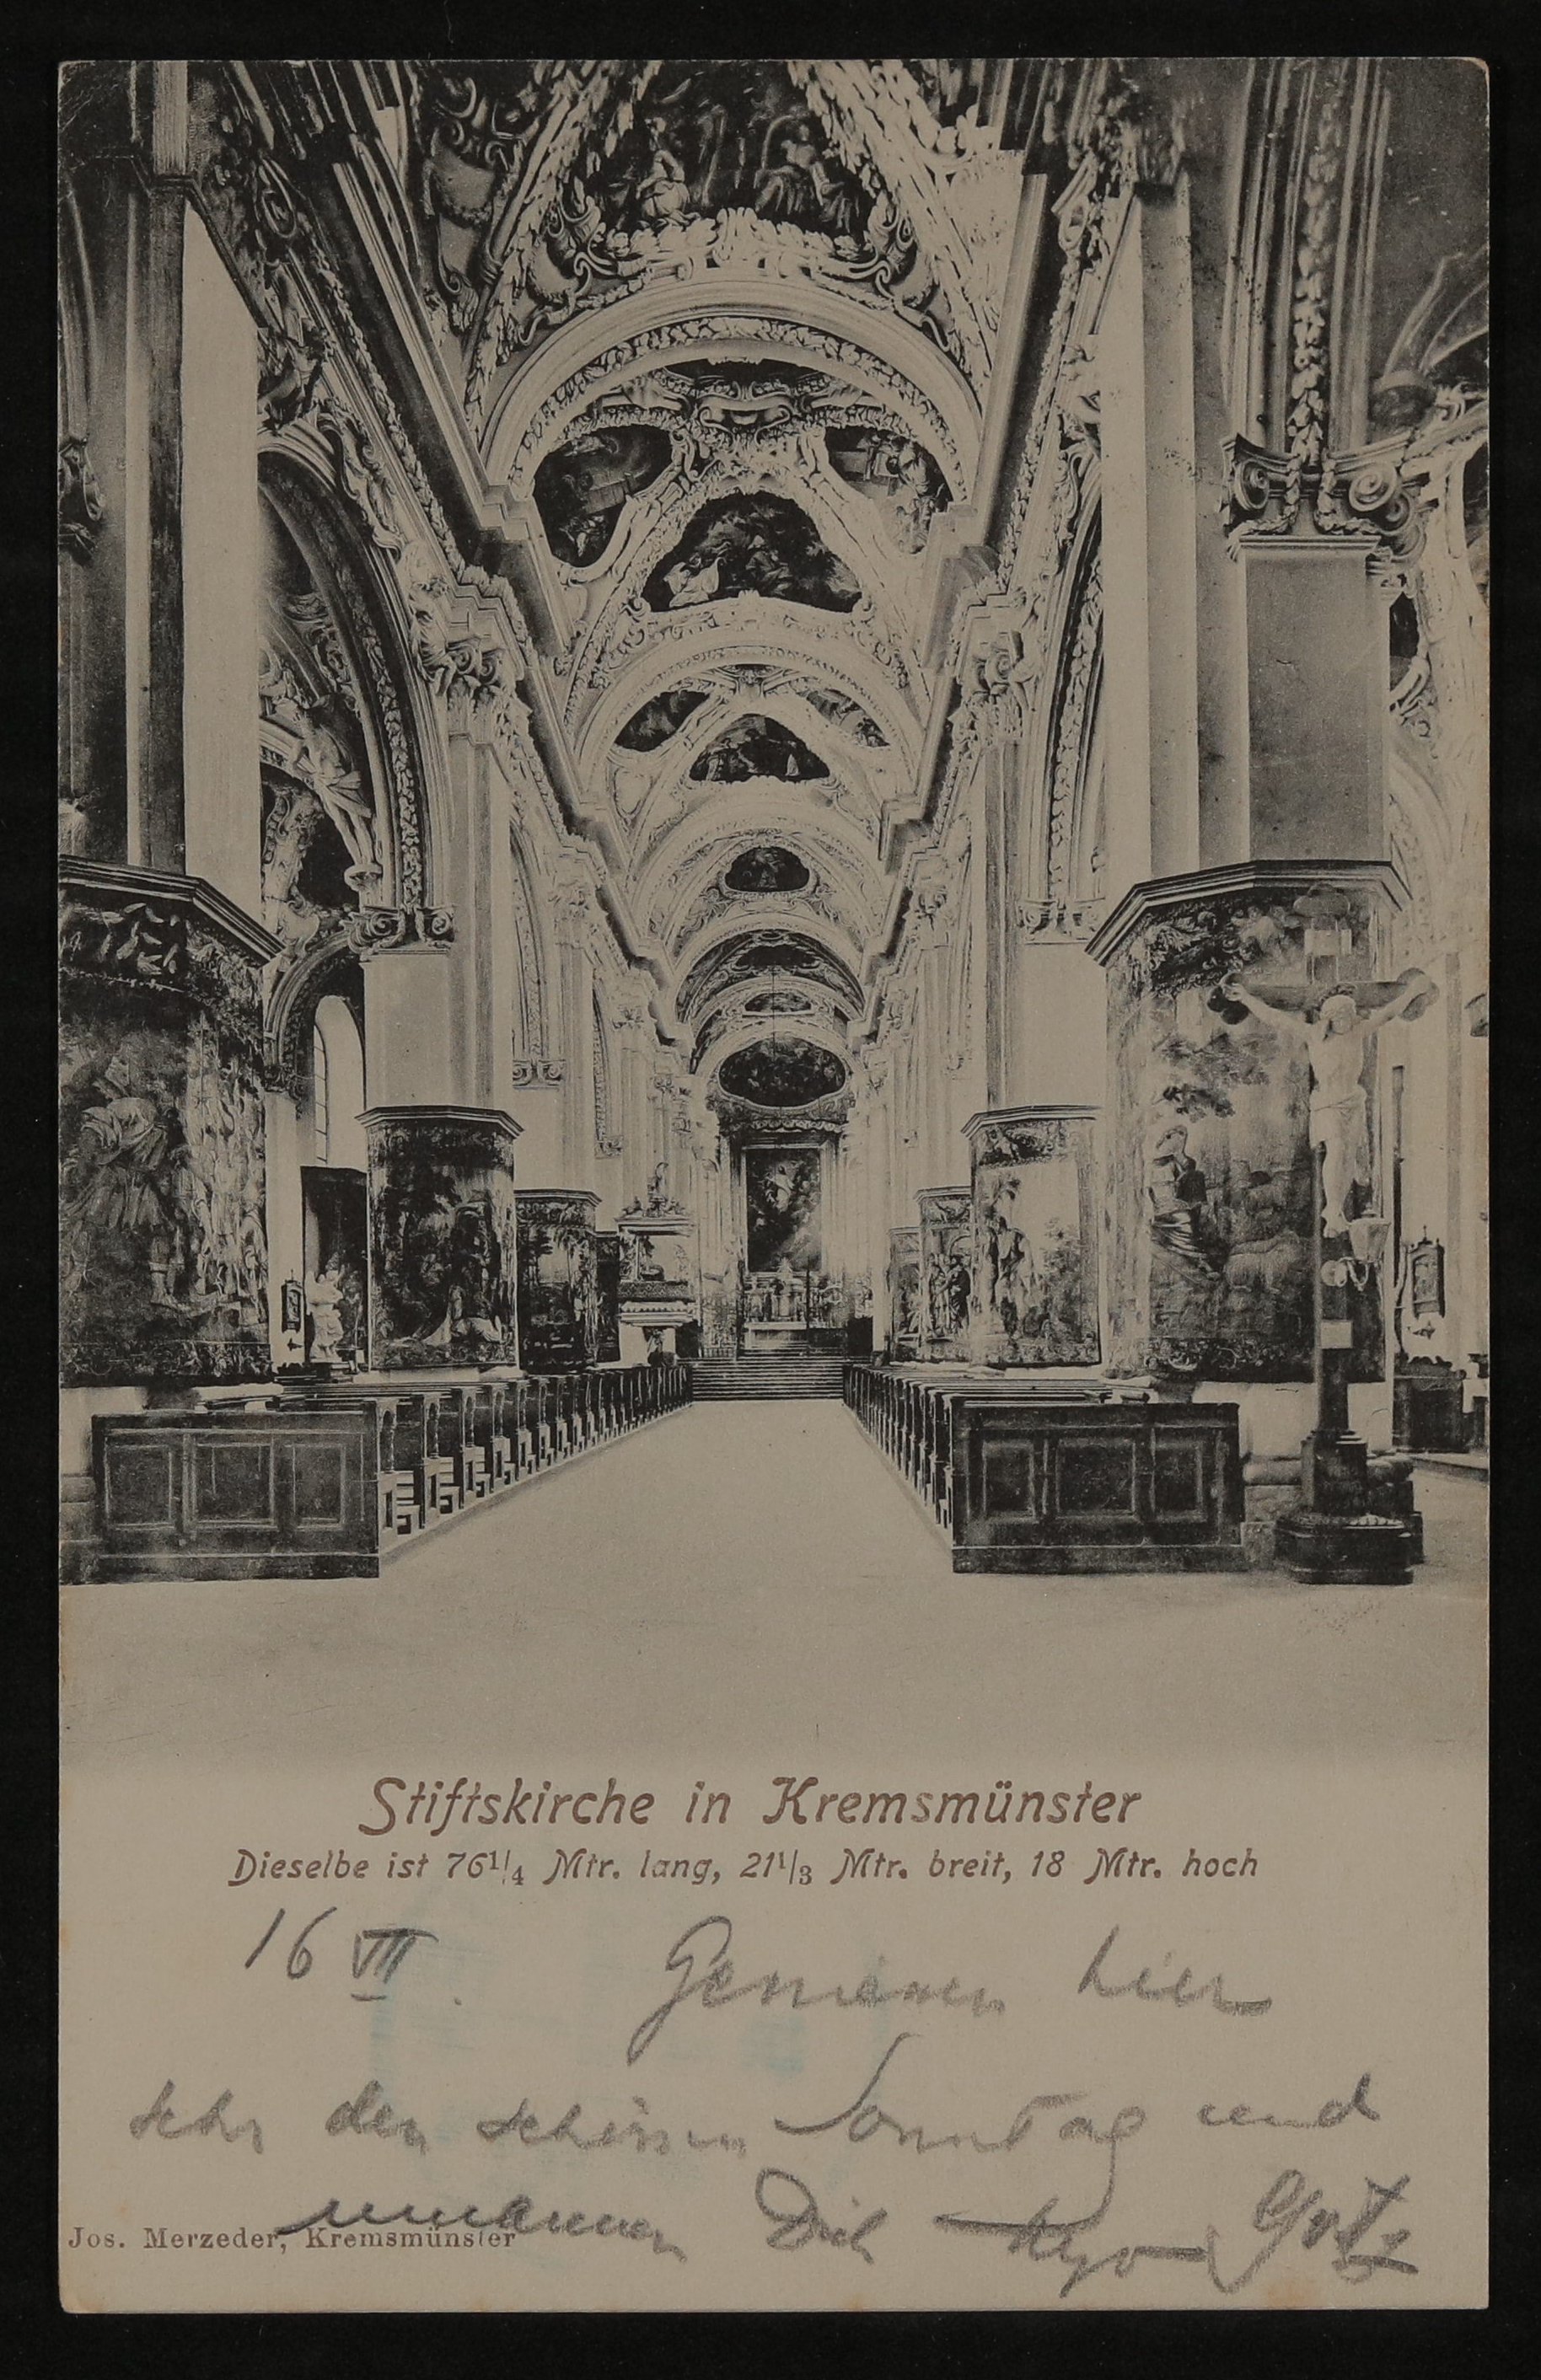 Ansichtskarte von Hofmannsthal an seinen Vater mit Ansicht des Innenraums der Stiftskirche in Kremsmünster (Freies Deutsches Hochstift / Frankfurter Goethe-Museum CC BY-NC-SA)